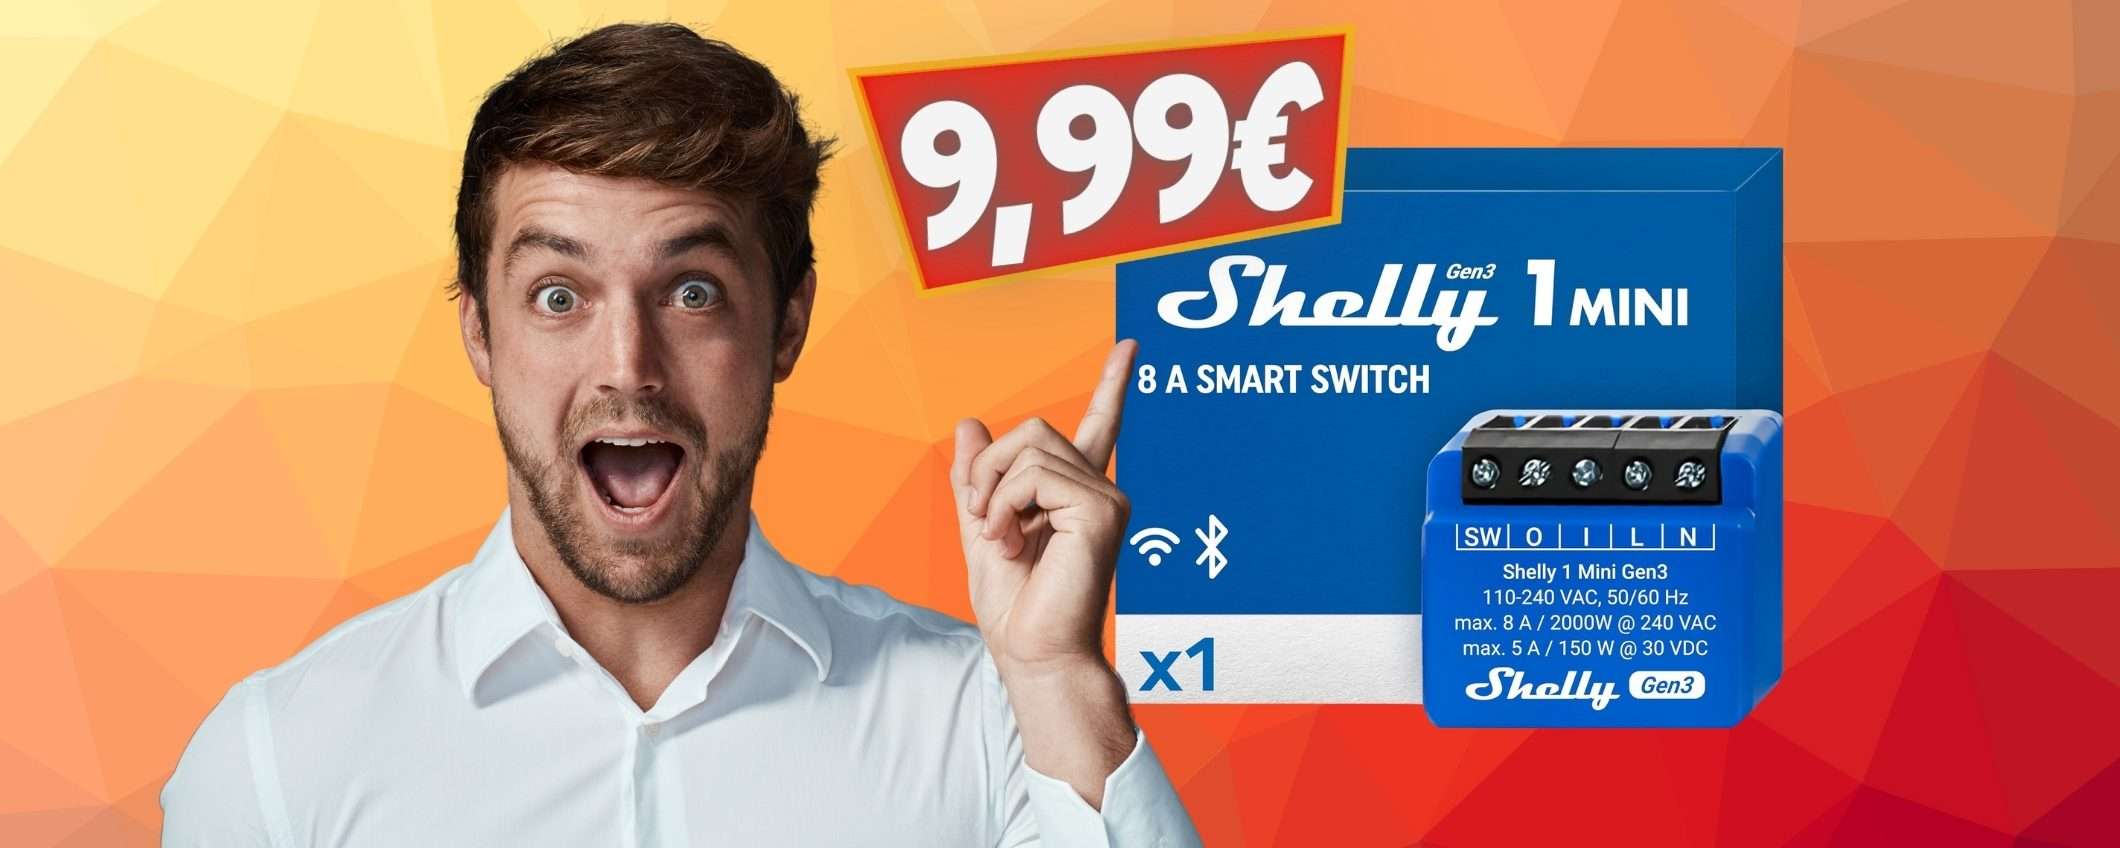 Shelly Plus 1 Mini Gen3: interruttore relè WiFi e tutto diventa Smart